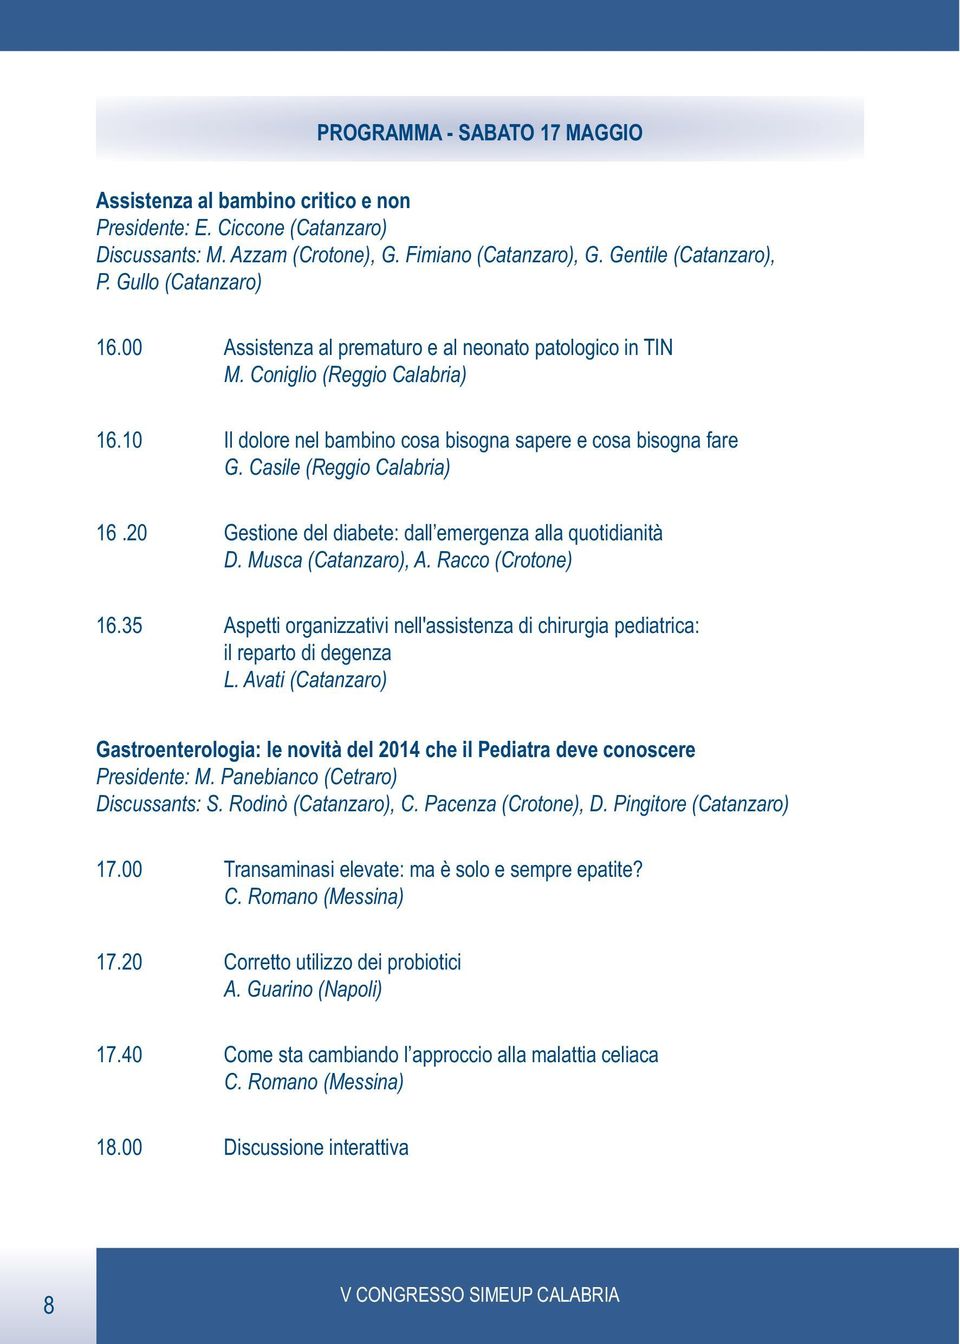 Casile (Reggio Calabria) 16.20 Gestione del diabete: dall emergenza alla quotidianità D. Musca (Catanzaro), A. Racco (Crotone) 16.